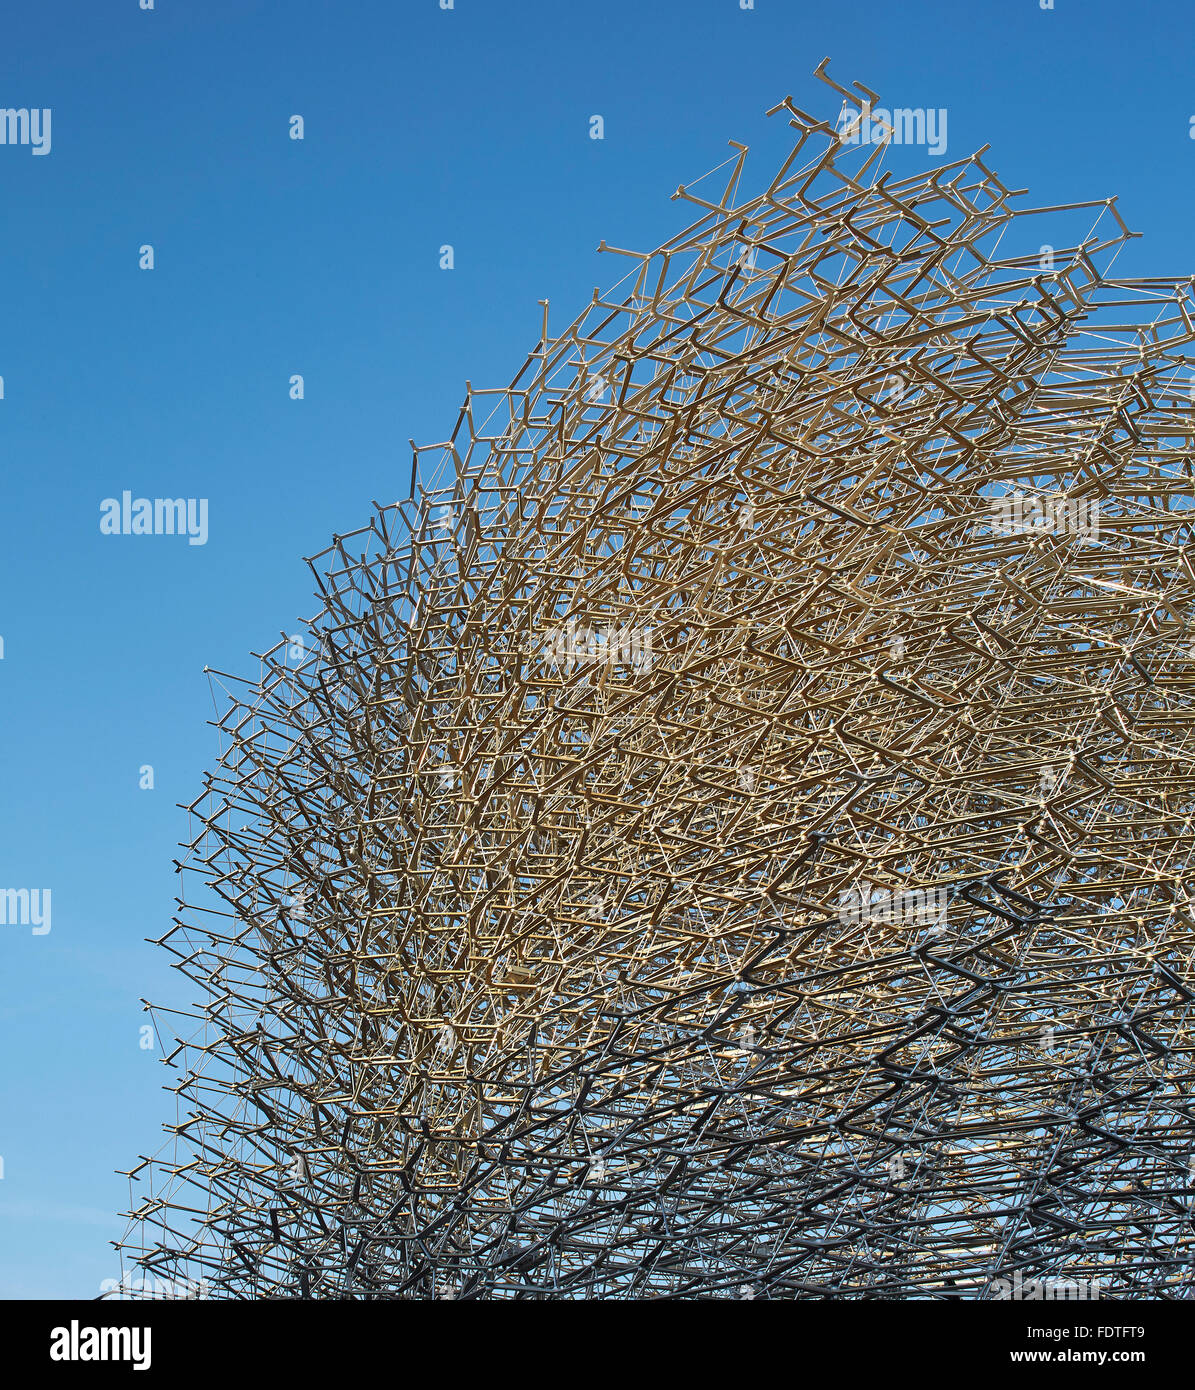 Détail de trame en aluminium. L'Expo Milan 2015, UK Pavilion, Milan, Italie. Architecte : Wolfgang Buttress, 2015. Banque D'Images